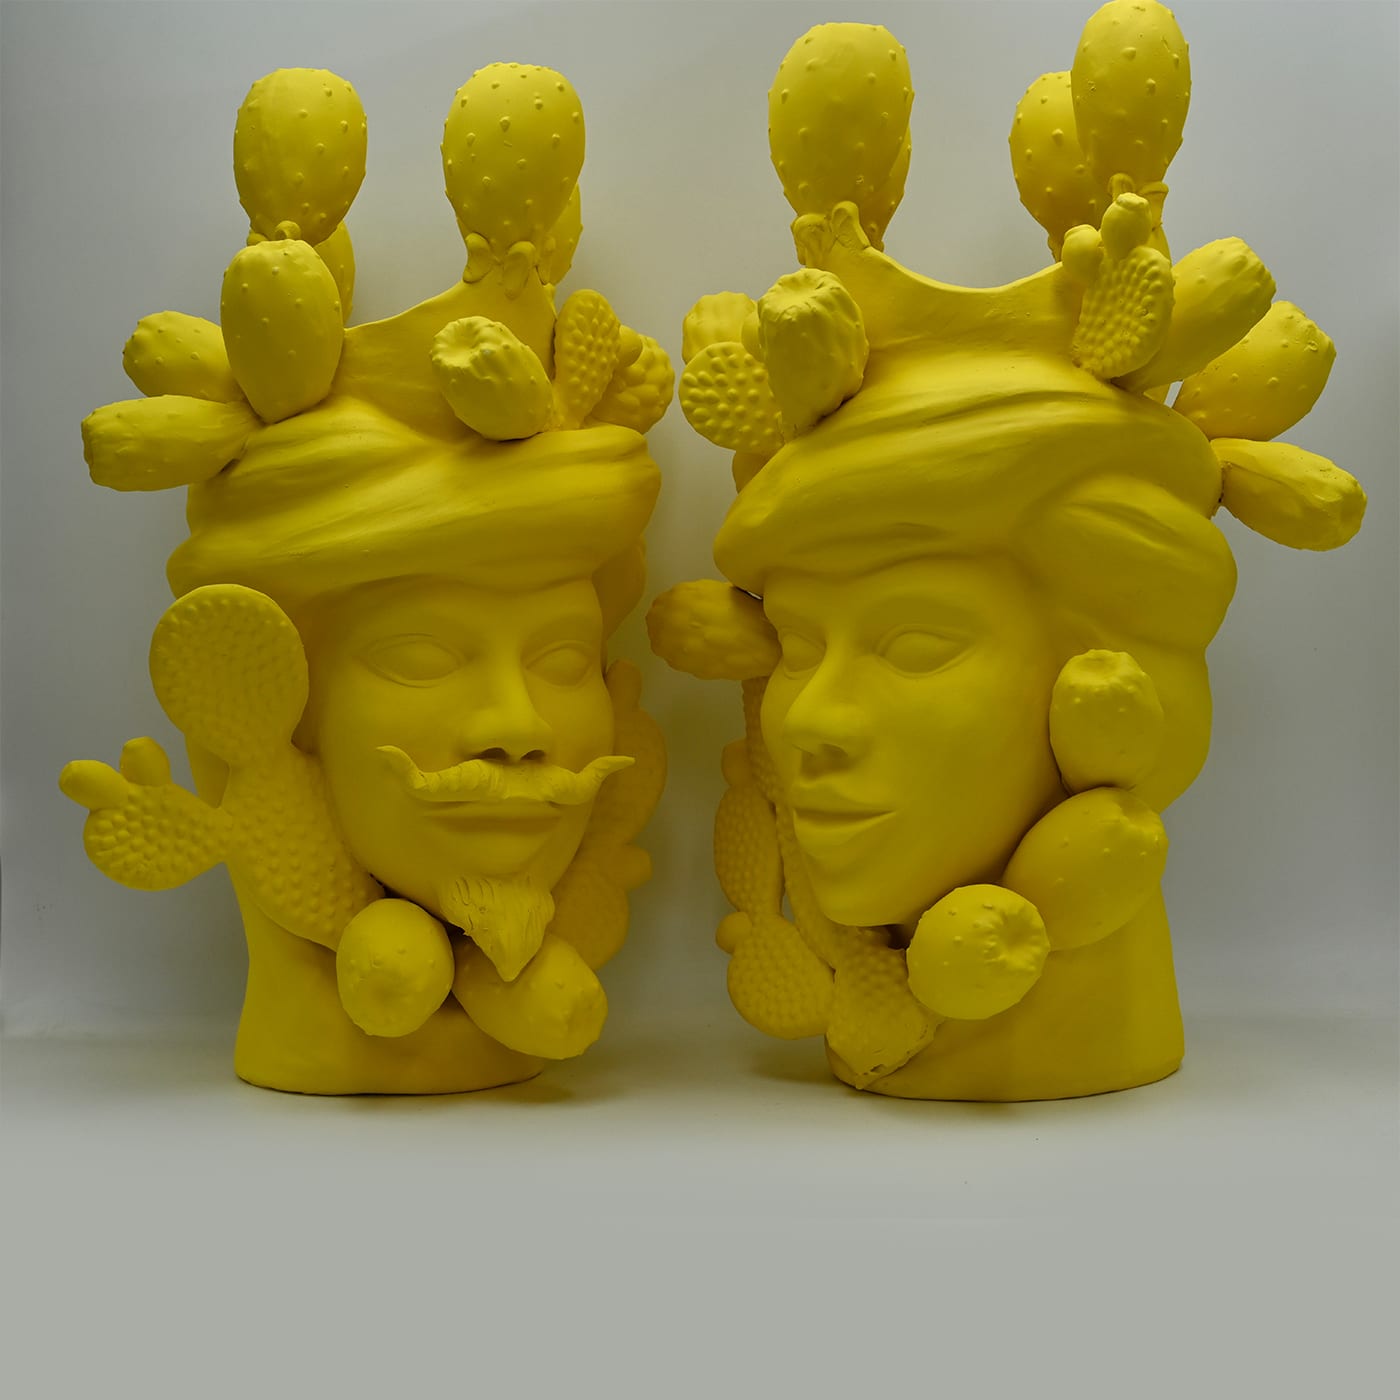 Unique Yellow Moor's Sculpture